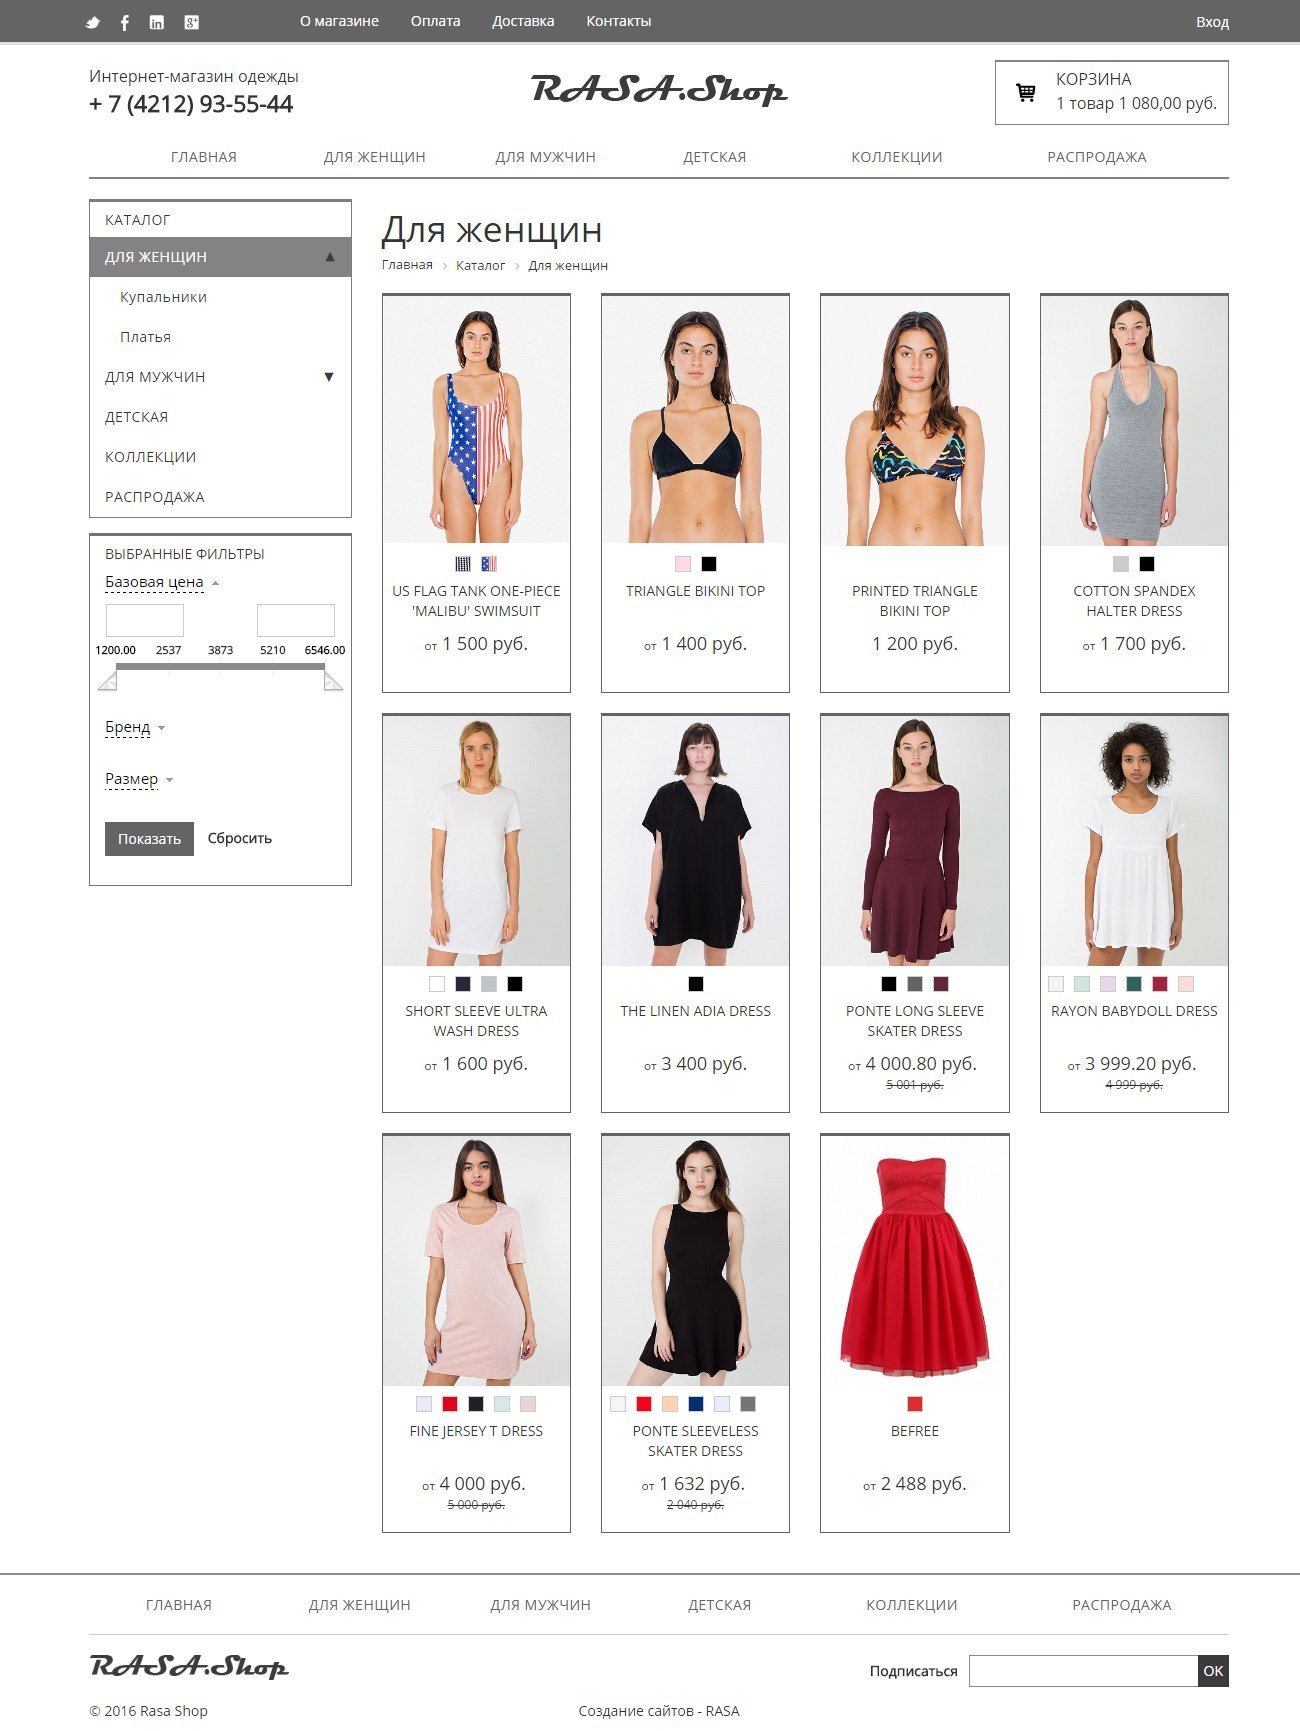 Адаптивный минималистичный интернет-магазин одежды